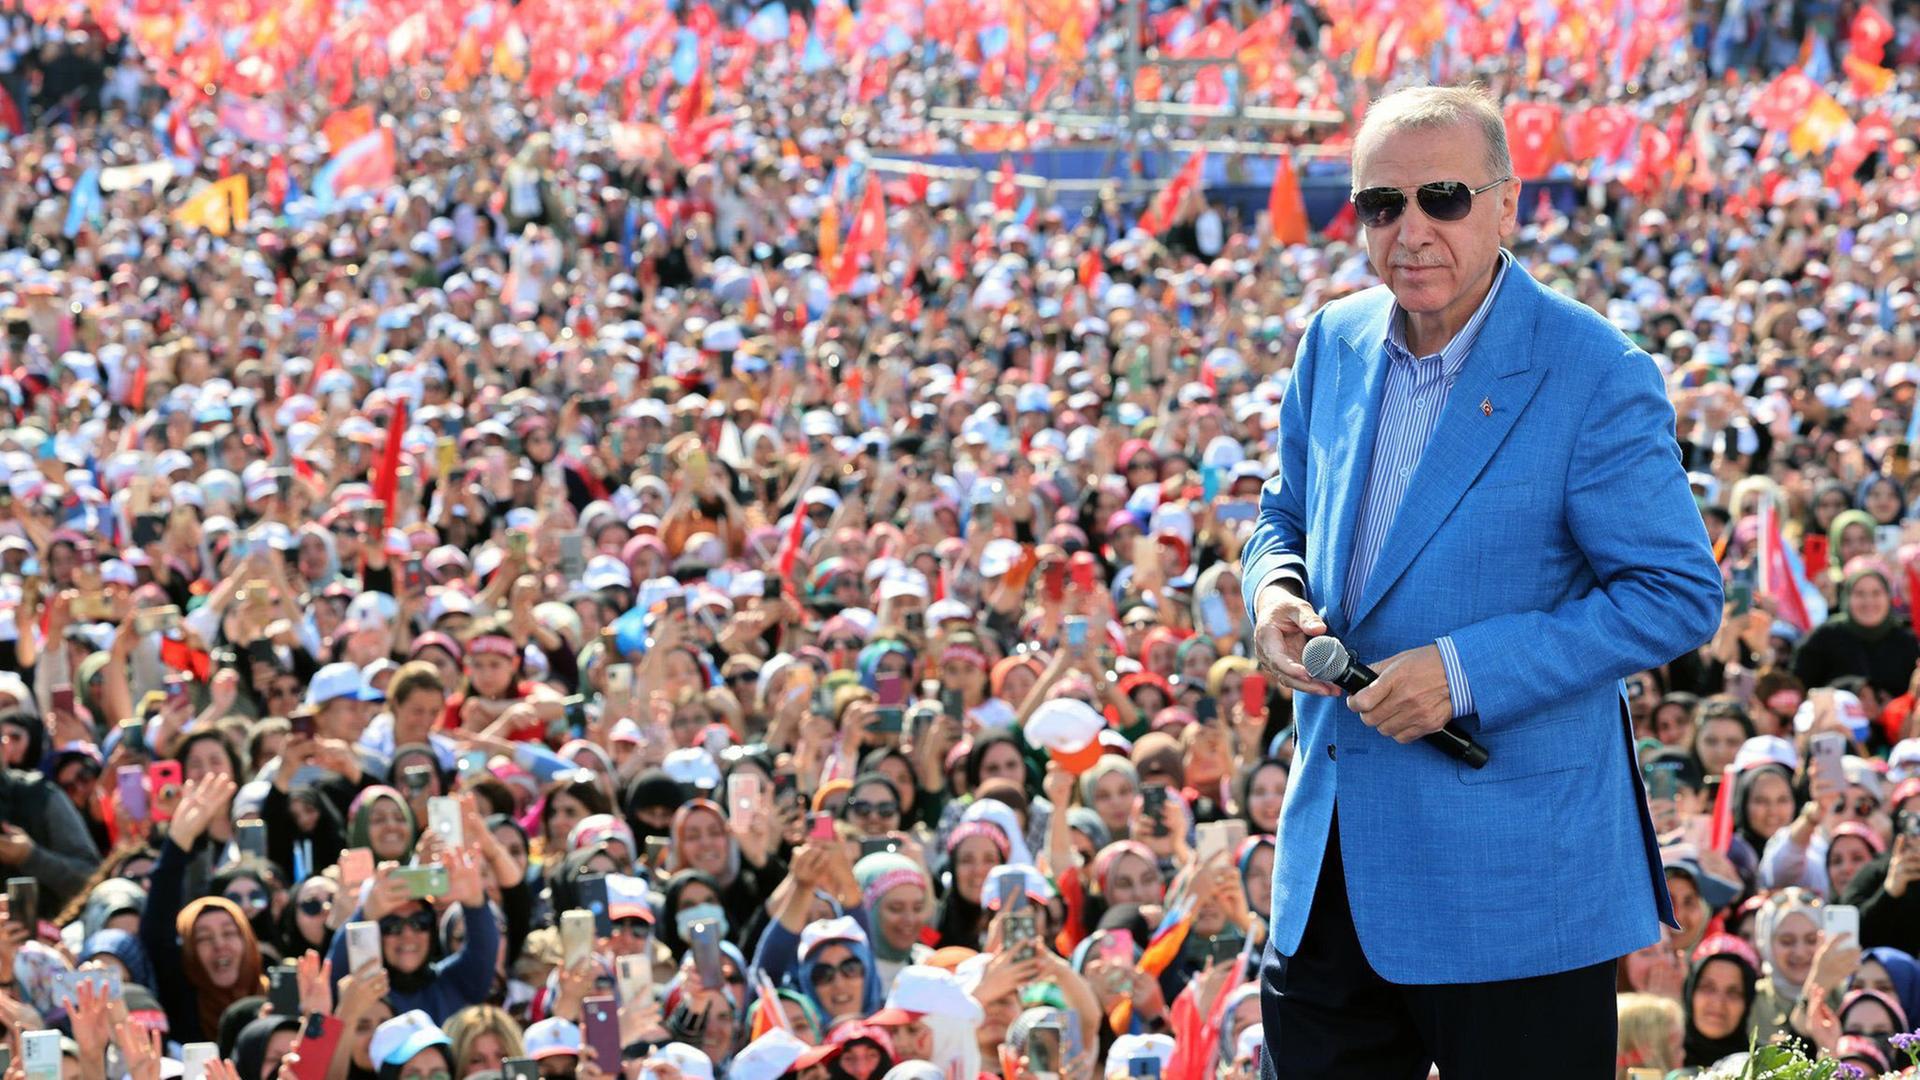 Der amtierende Präsident der Türkei, Recep Tayyip Erdoğan, im Wahlkampf: Er steht auf einer Bühne, im Hintergrund sind seine Anhänger zu sehen.